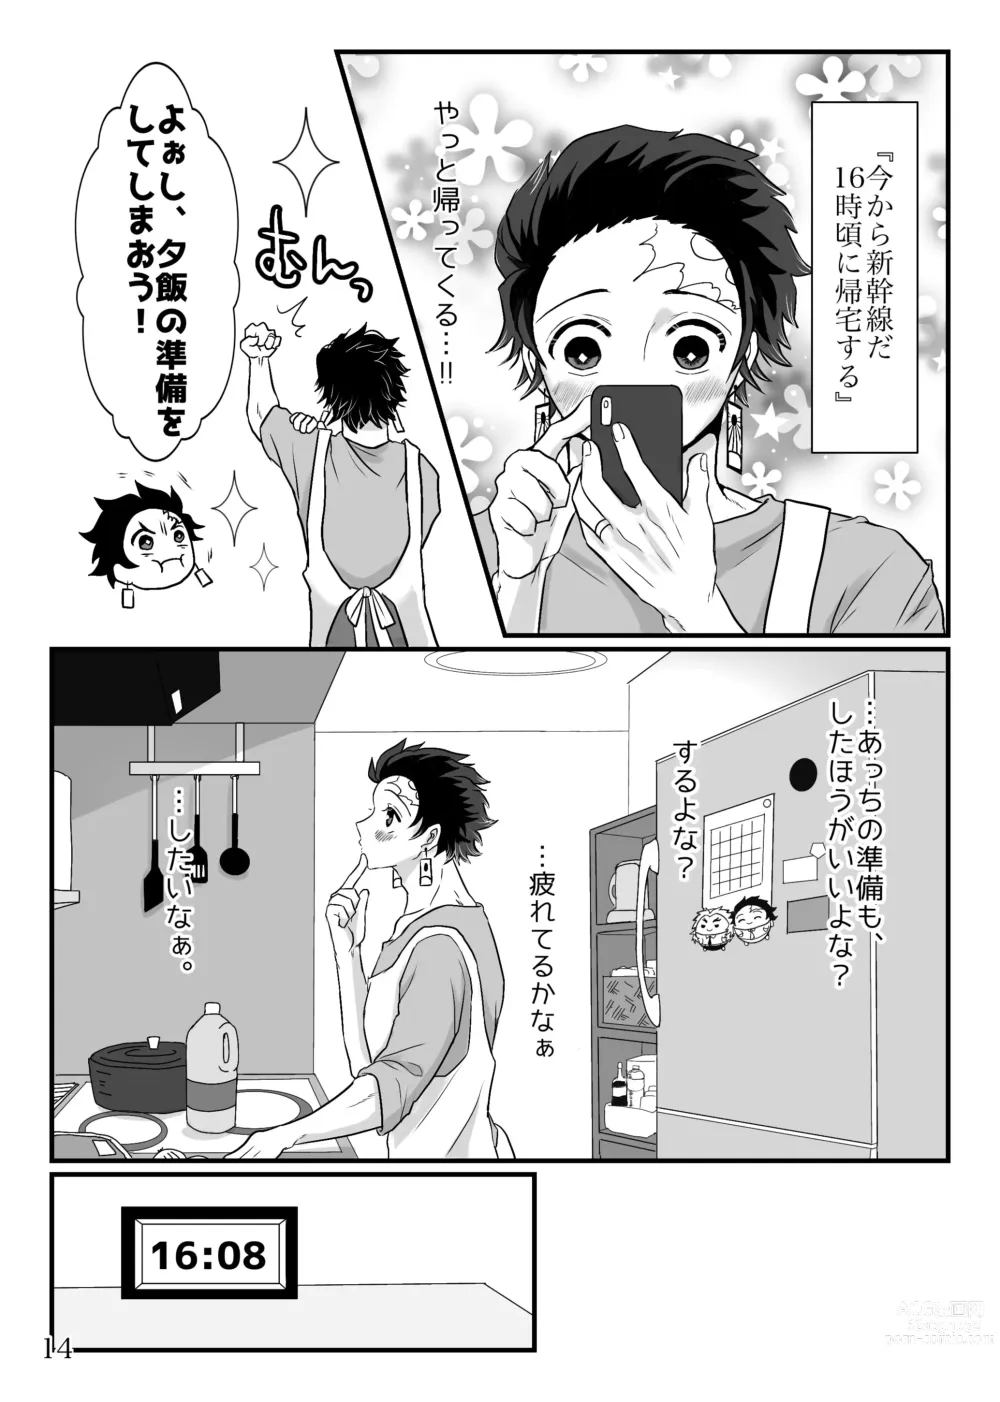 Page 15 of doujinshi Shounen, Sensei to Yonde Kurenai ka